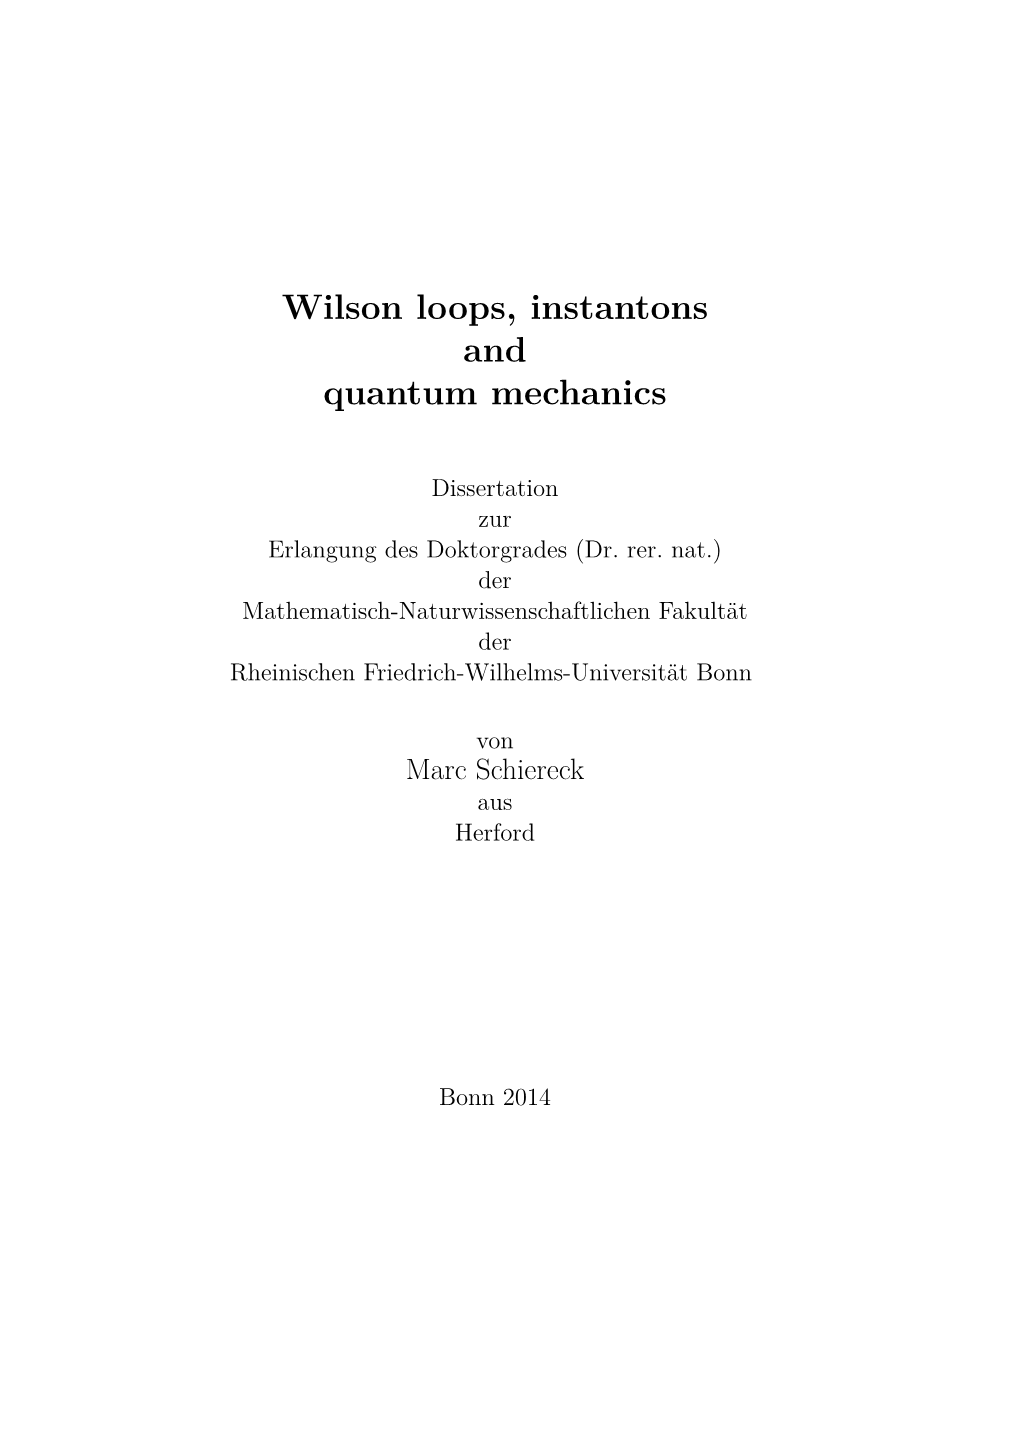 Wilson Loops, Instantons and Quantum Mechanics